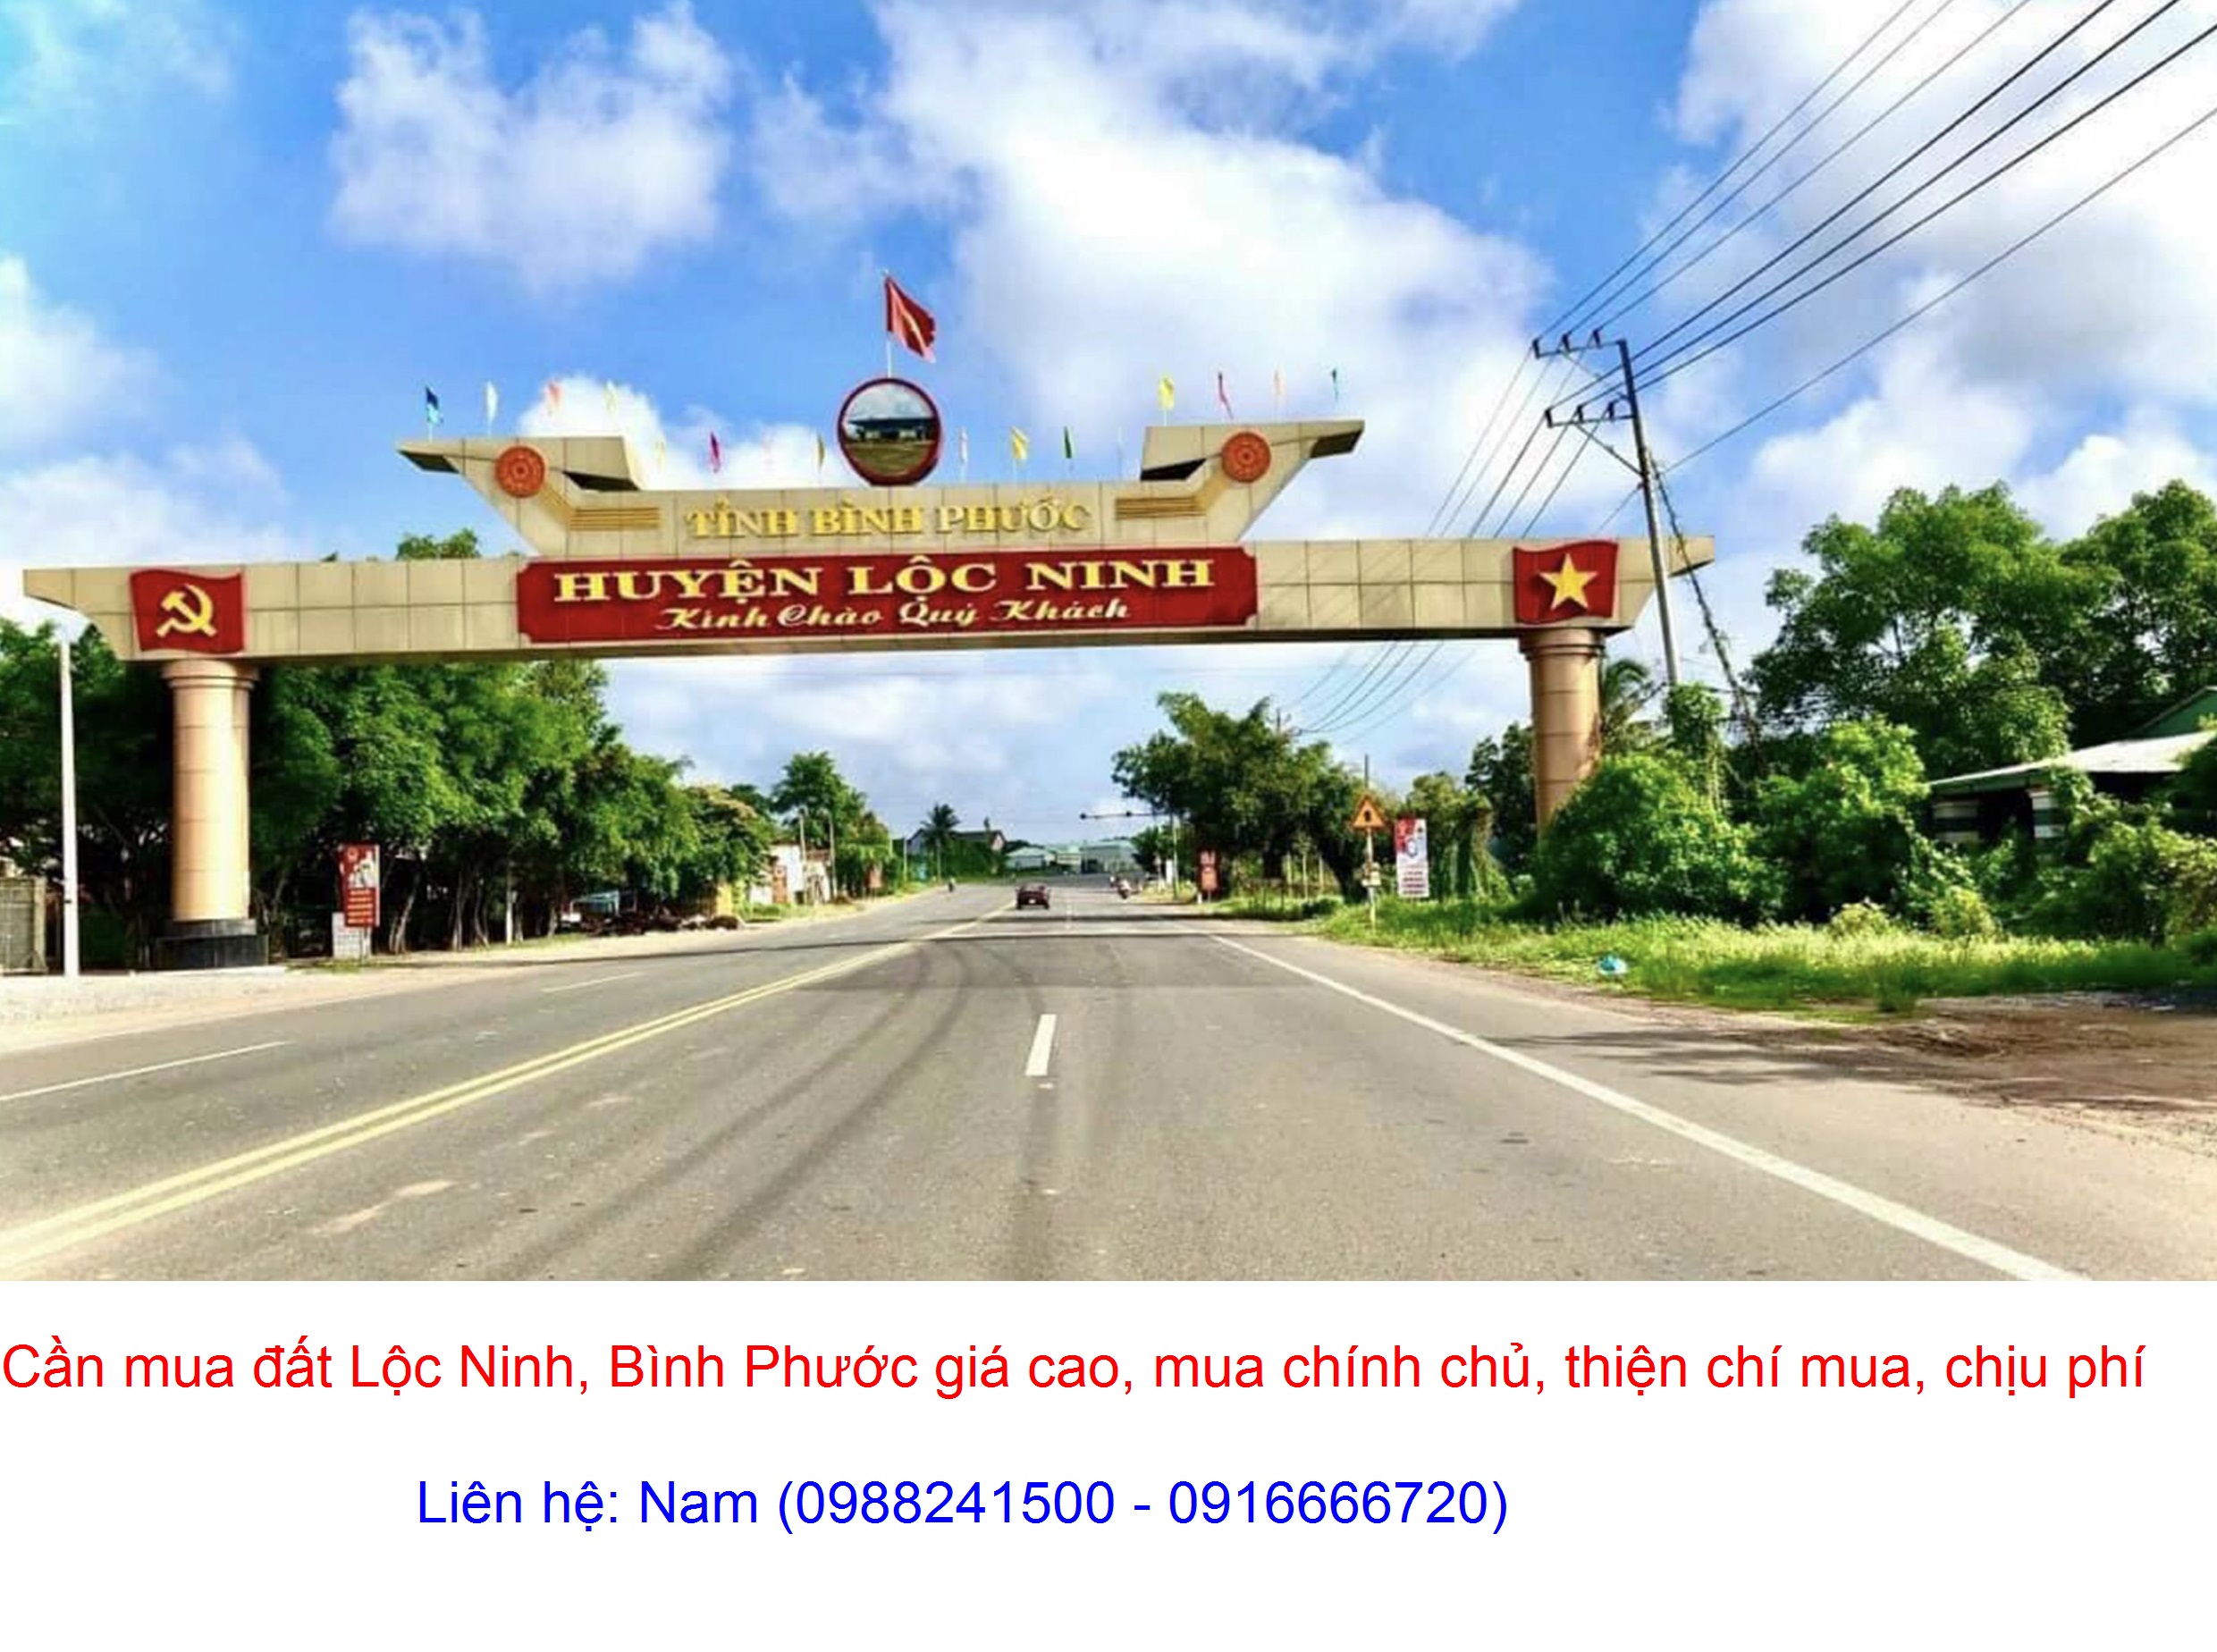 Cần Mua đất xã Lộc Hưng, Lộc Ninh giá cao, mua chính chủ